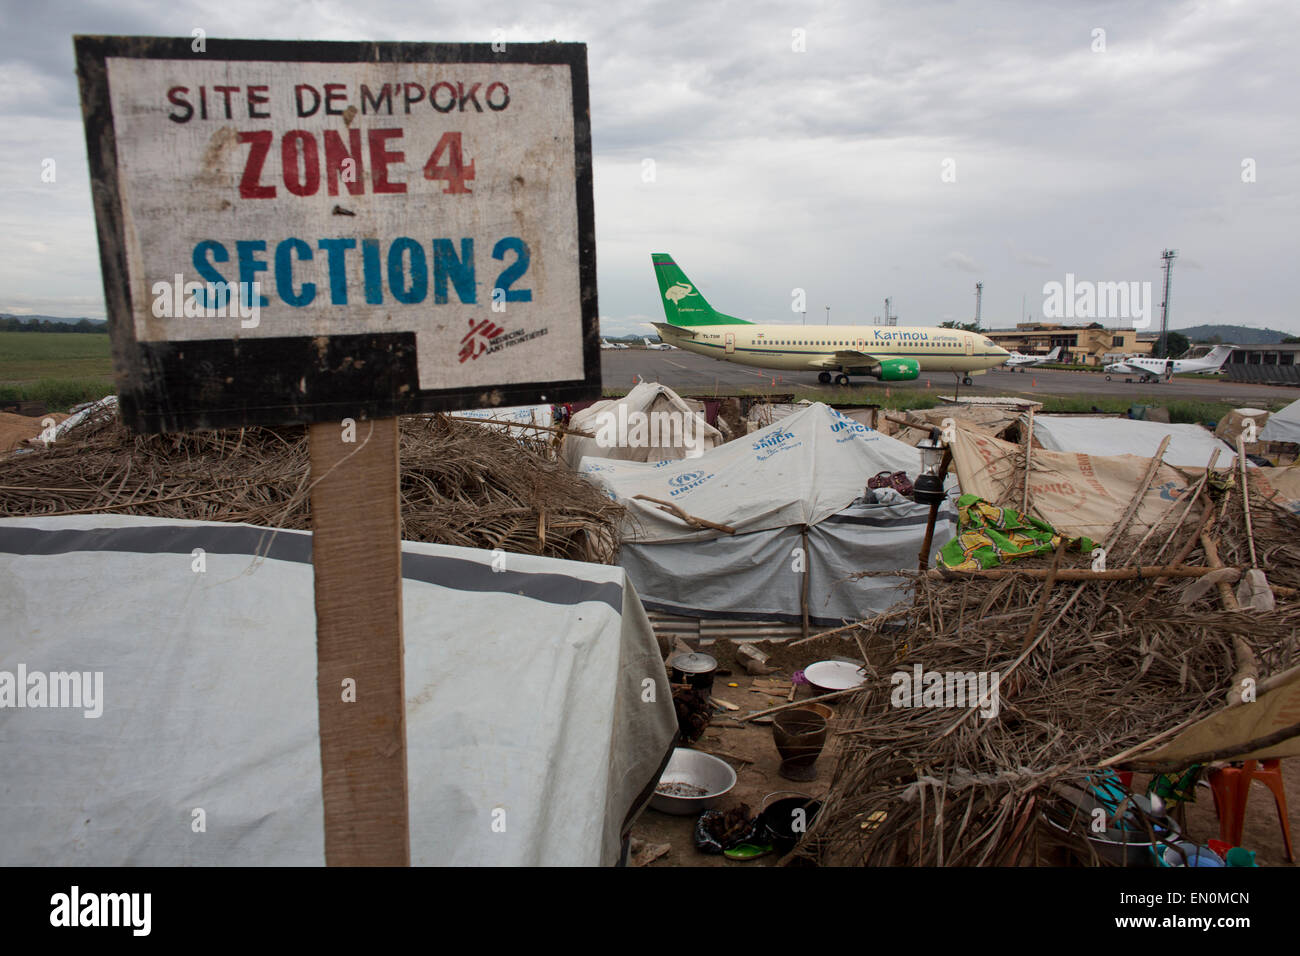 Les personnes déplacées ont trouvé refuge dans l'aéroport Mpoko, location Banque D'Images